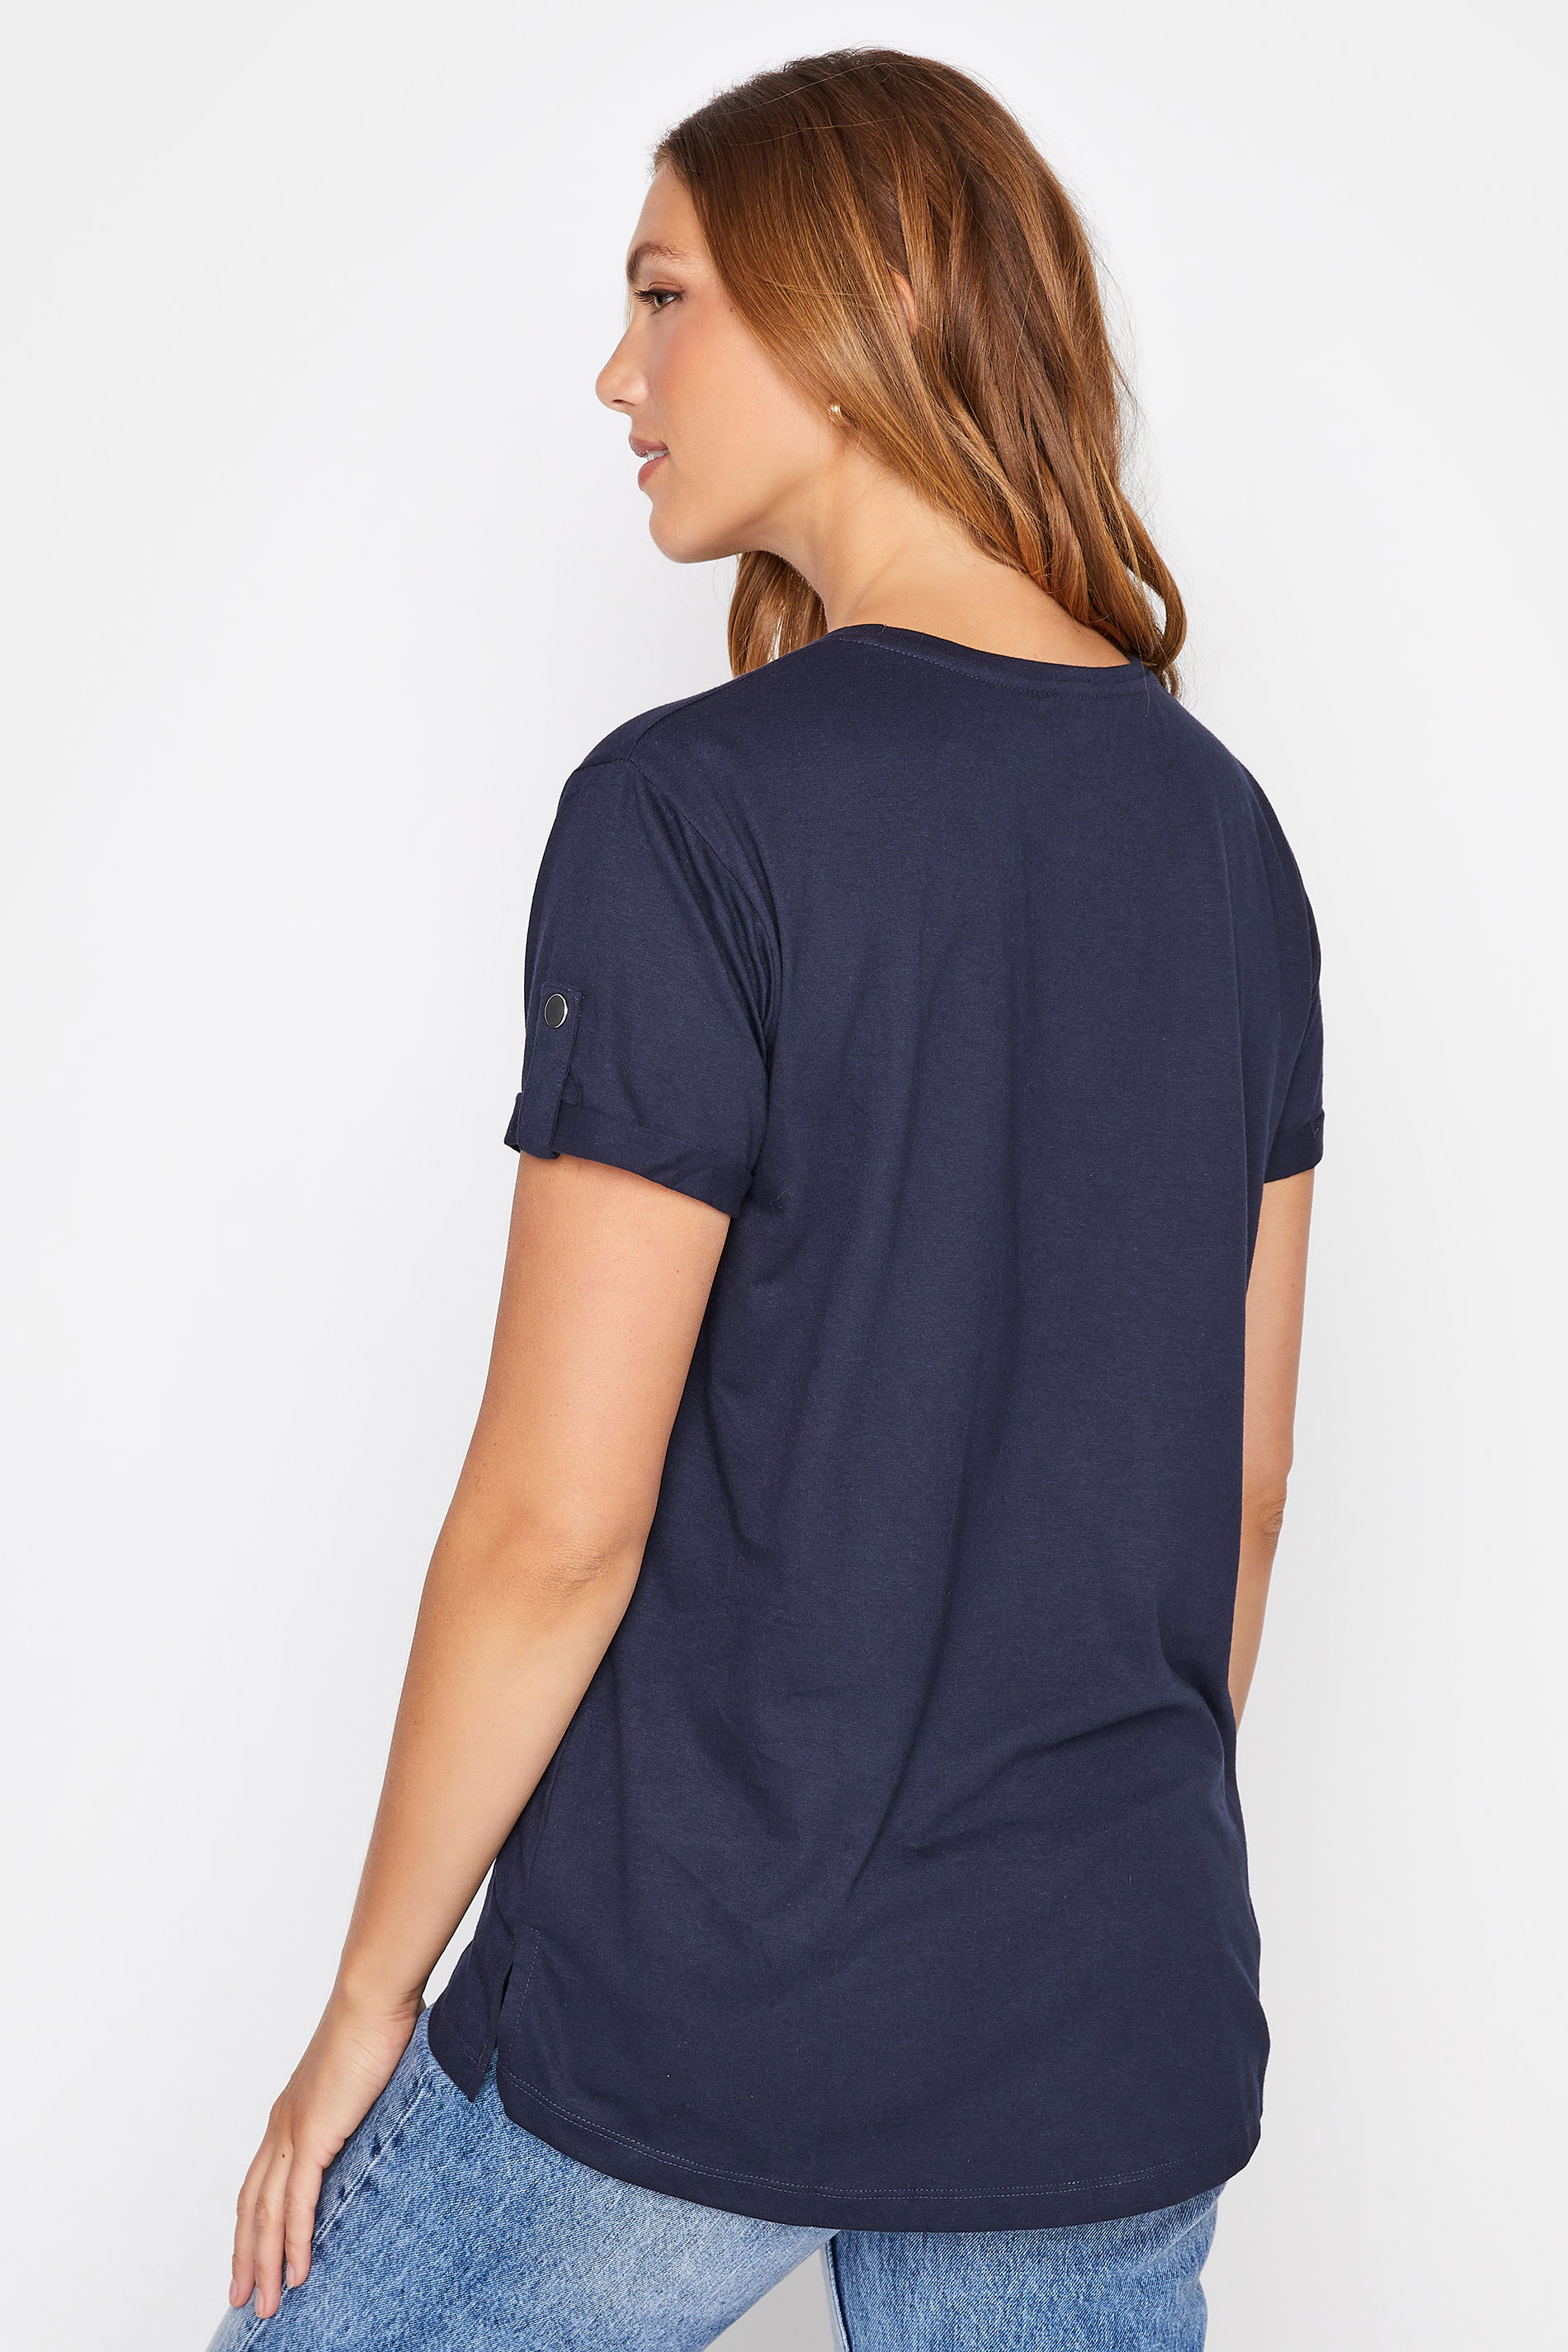 Tall Women's LTS Navy Blue Short Sleeve Pocket T-Shirt | Long Tall Sally 3